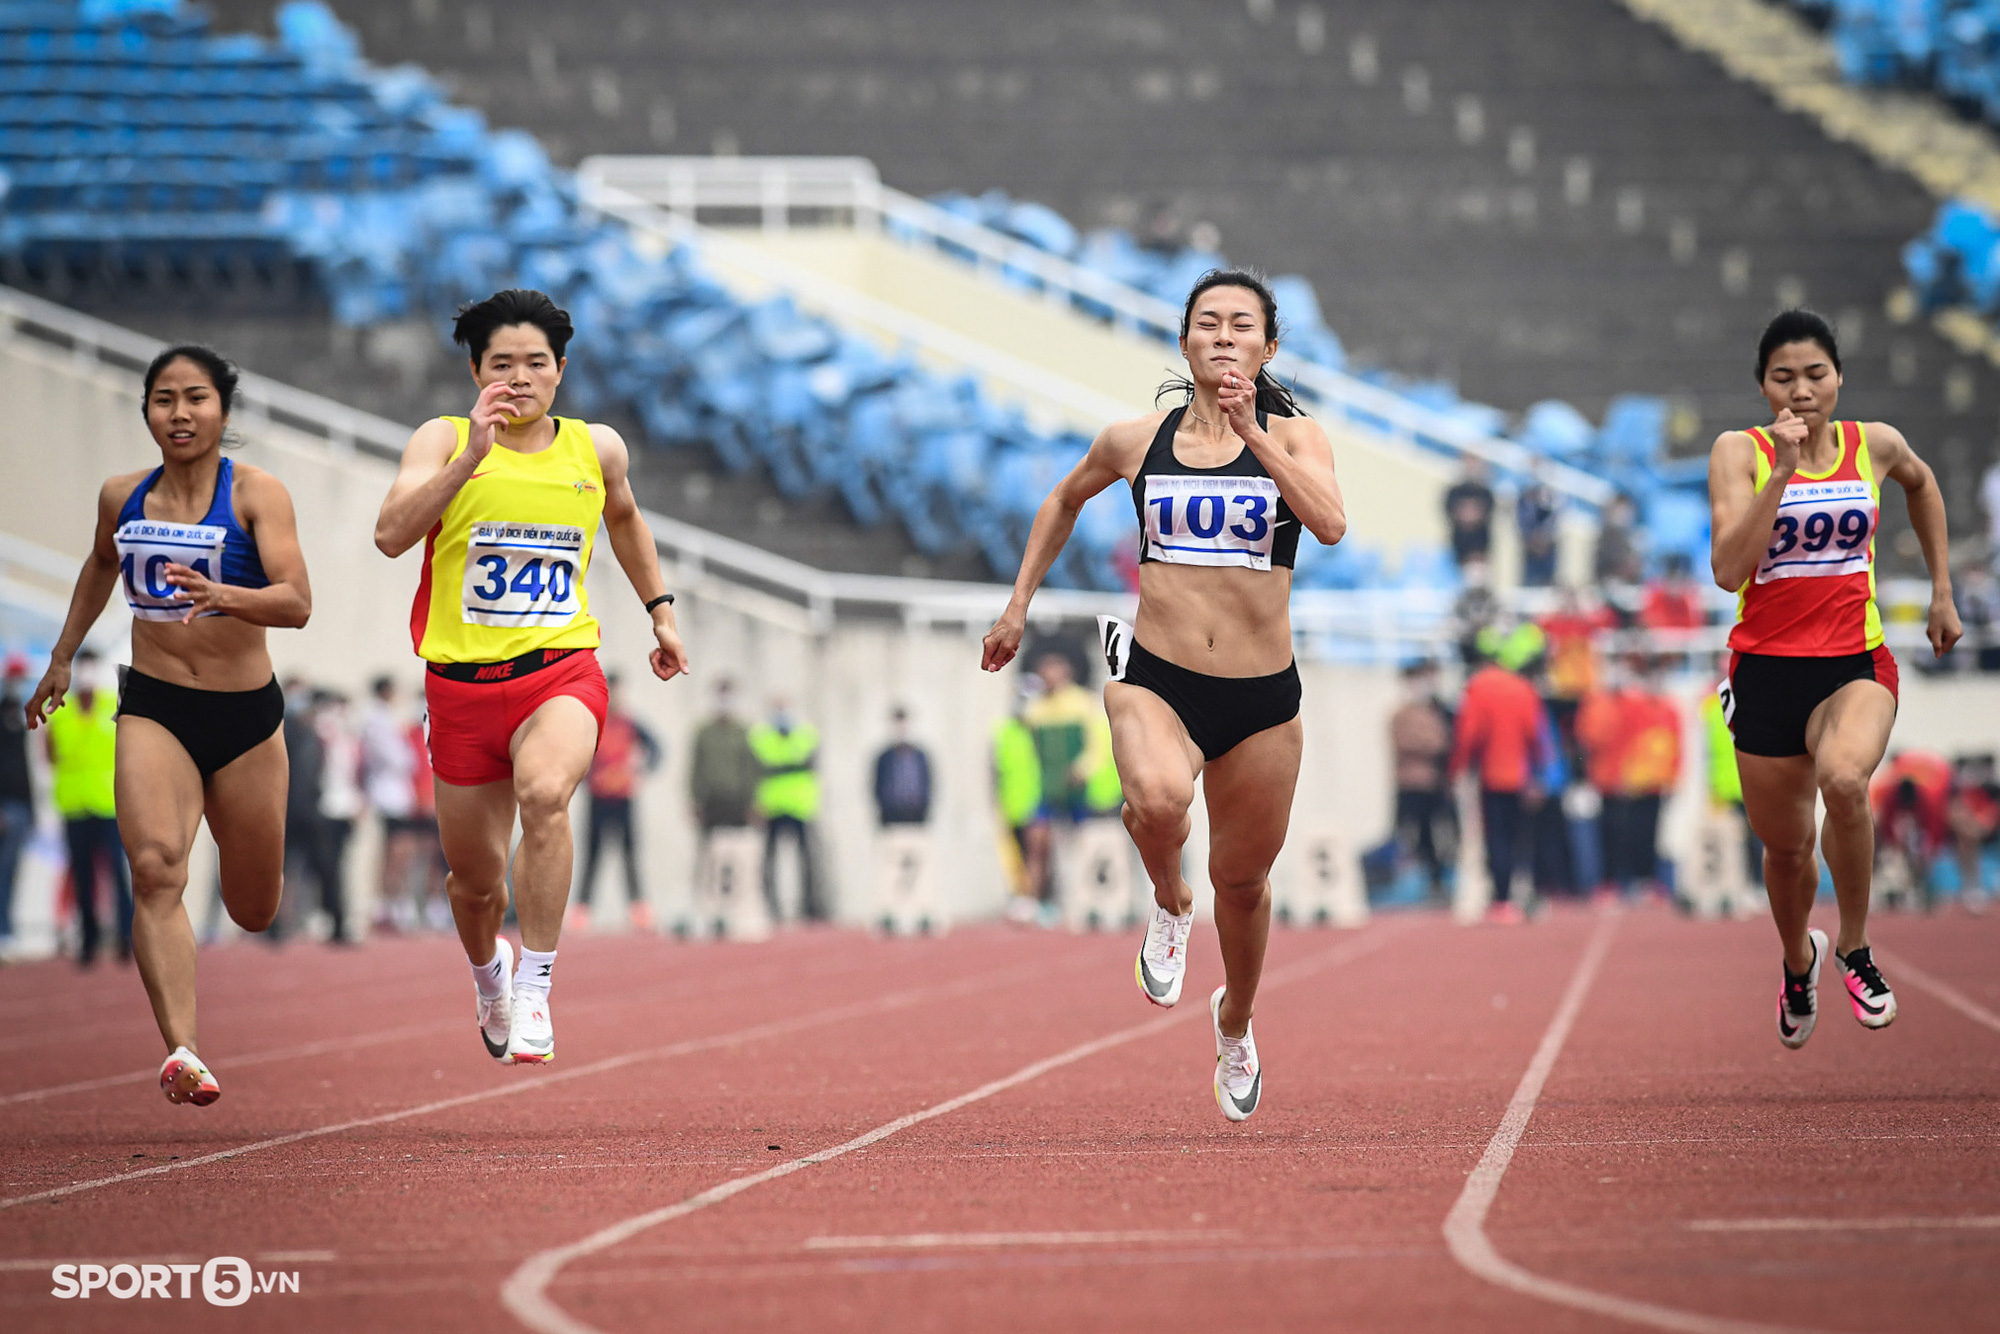 “Nữ hoàng tốc độ” Tú Chinh vượt trội tại giải điền kinh VĐQG 2021  - Ảnh 2.